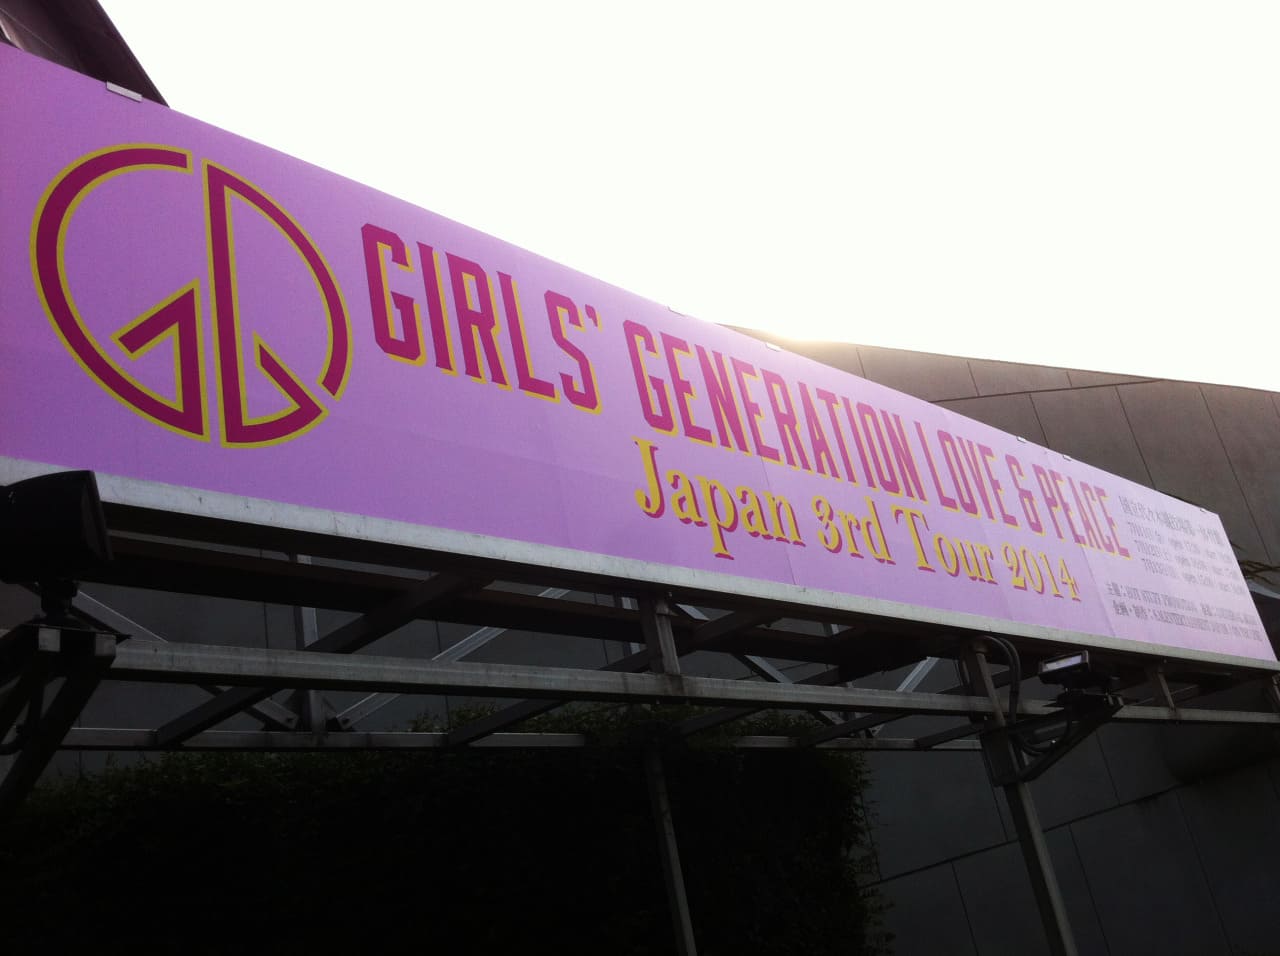 少女時代 Girls’ Generation ～ Love & Peace ～ Japan 3rd Tour